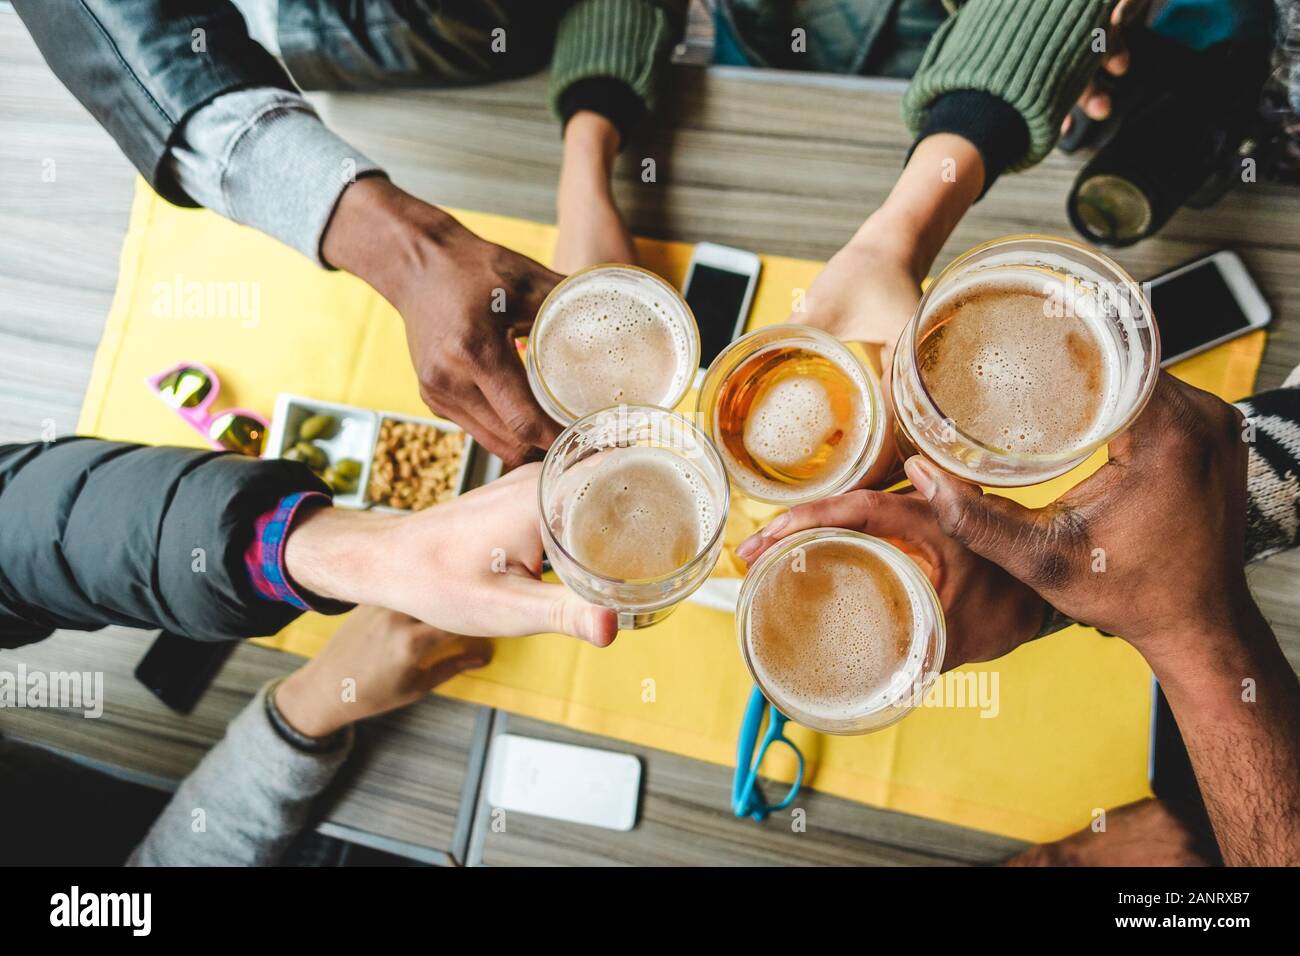 Eine Gruppe von Freunden, die eine Bierbrille im englischen Pub-Restaurant genießen - Junge Leute jubeln in der Vintage-Bar - Freundschaft, Happy Hour und Party-Konzept - Stockfoto